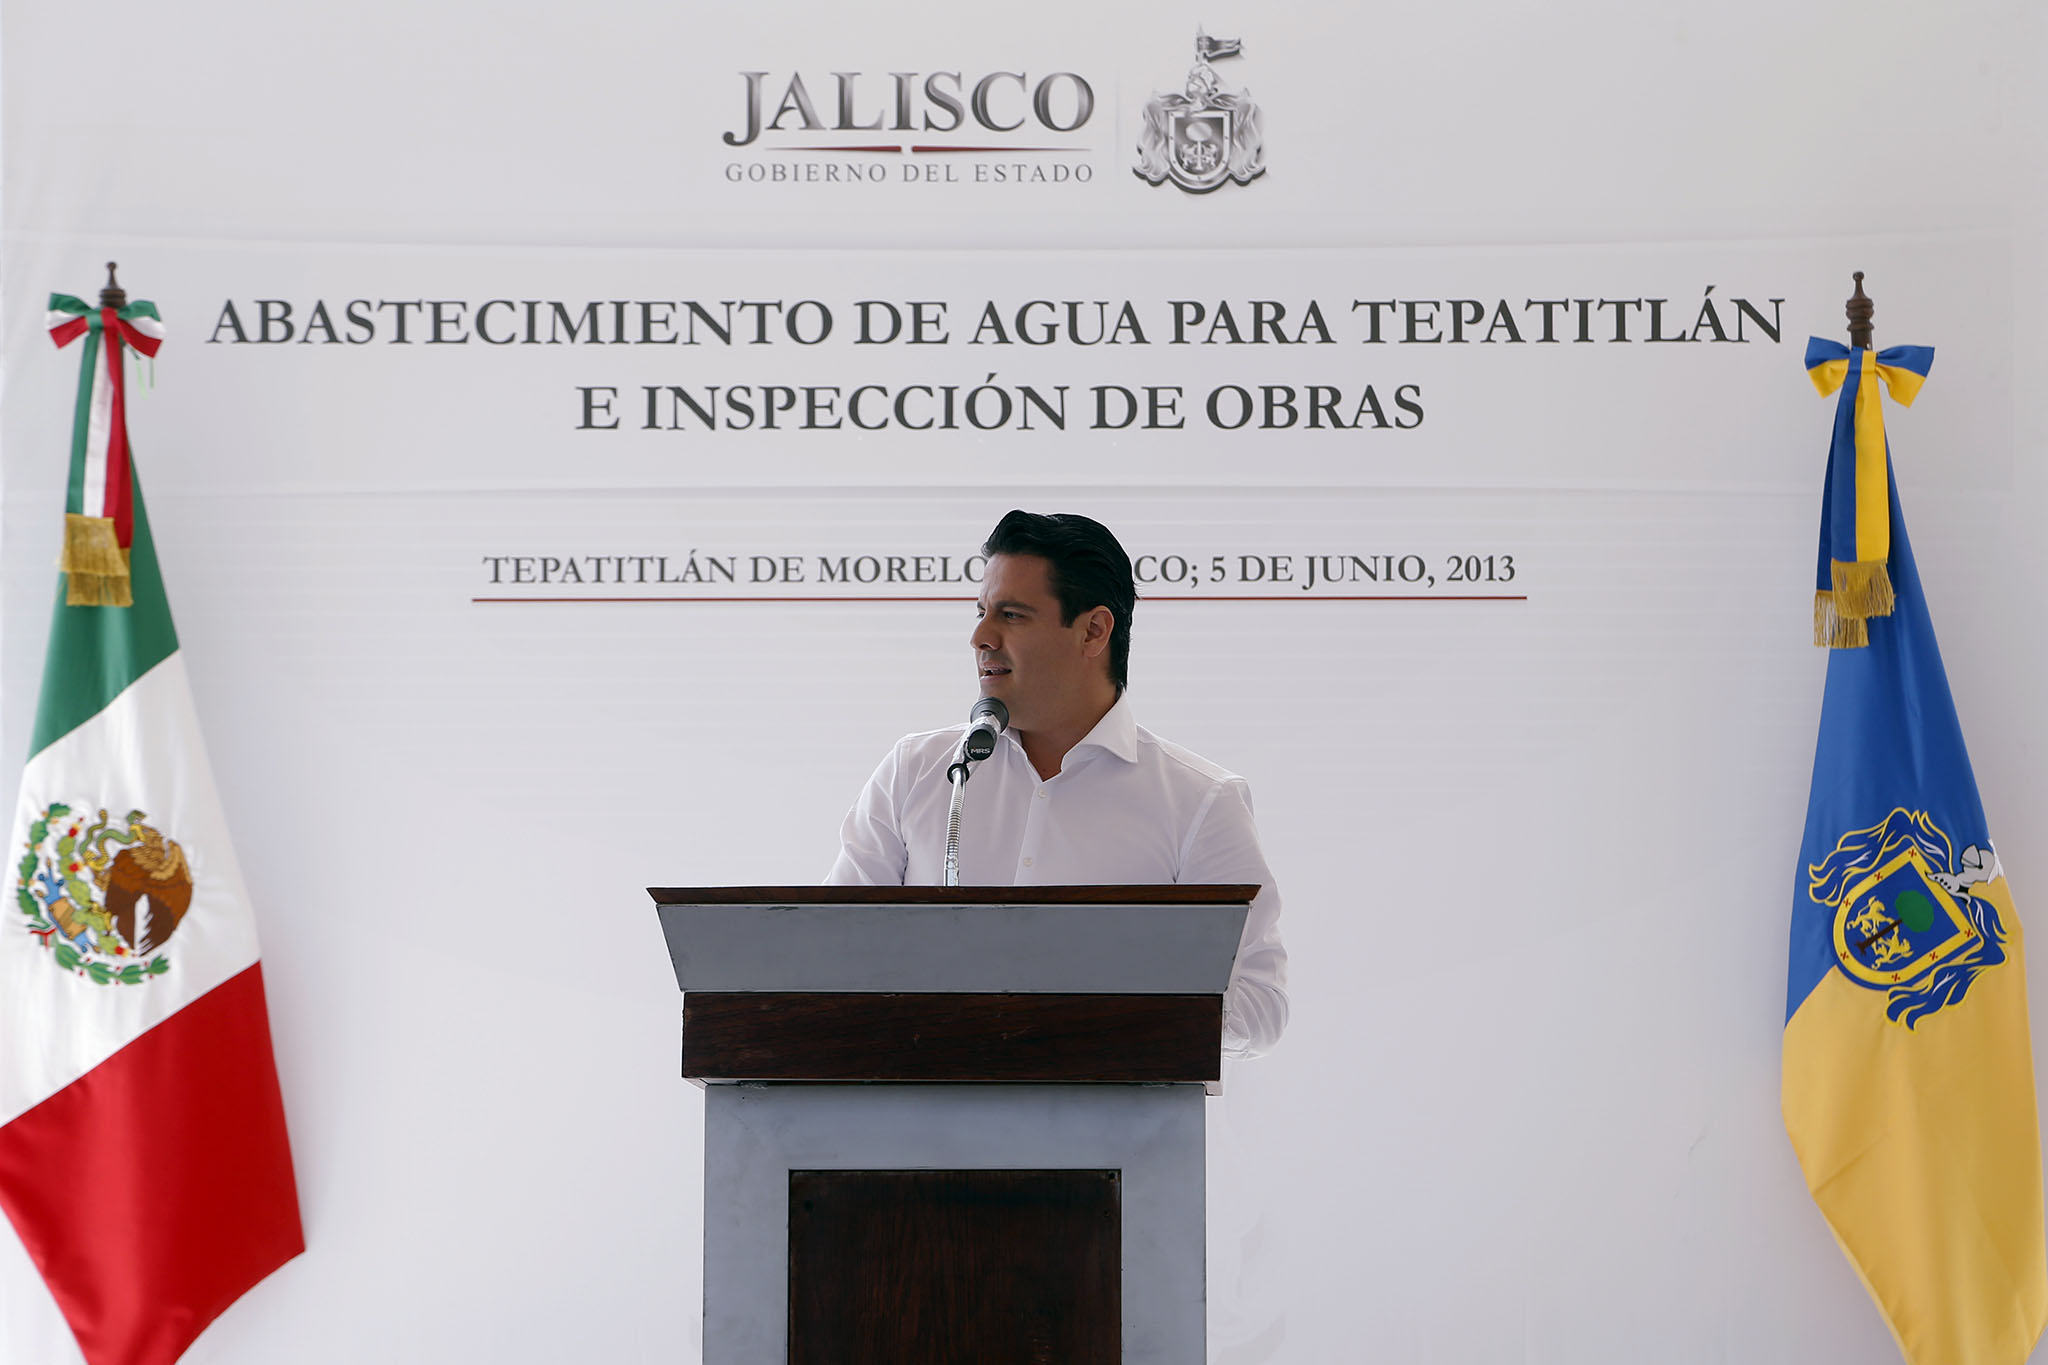 Presenta Gobernador De Jalisco Proyecto De Abastecimiento De Agua Para Tepatitlán Gobierno Del 3717